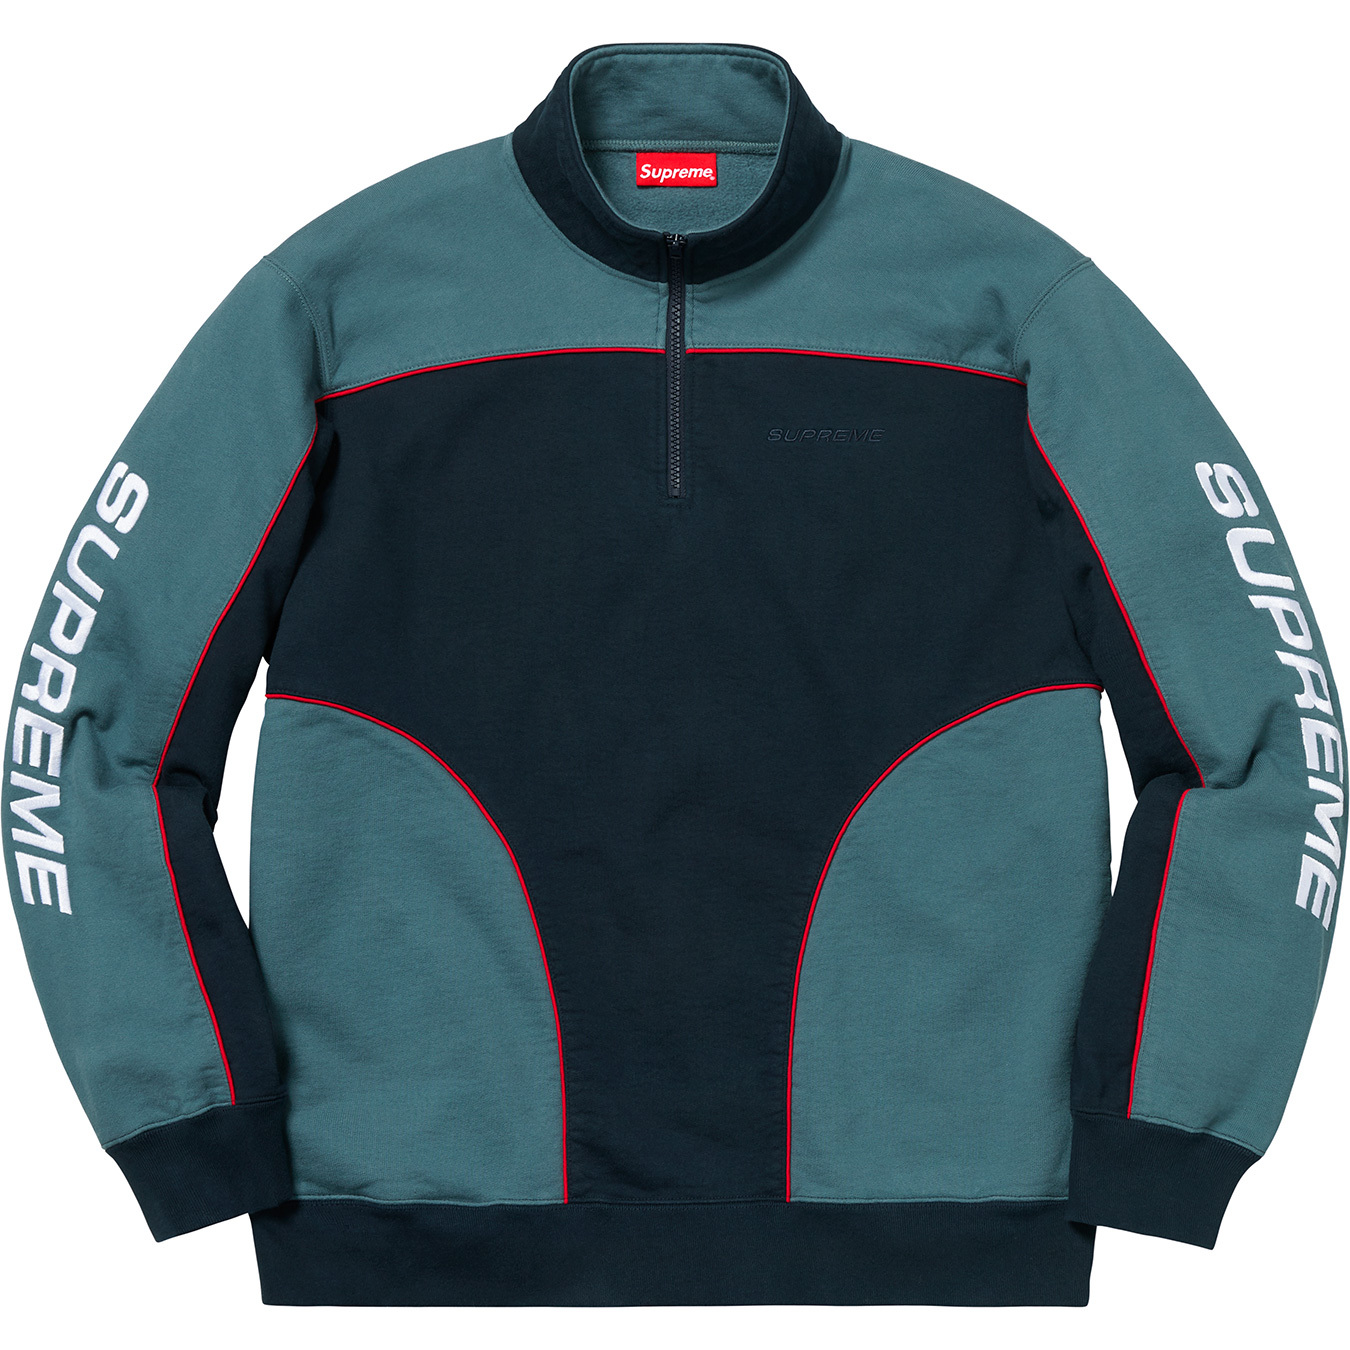 Supreme Speedway Half Zip Sweatshirt Navy/Dark Teal Men's - FW18 - GB